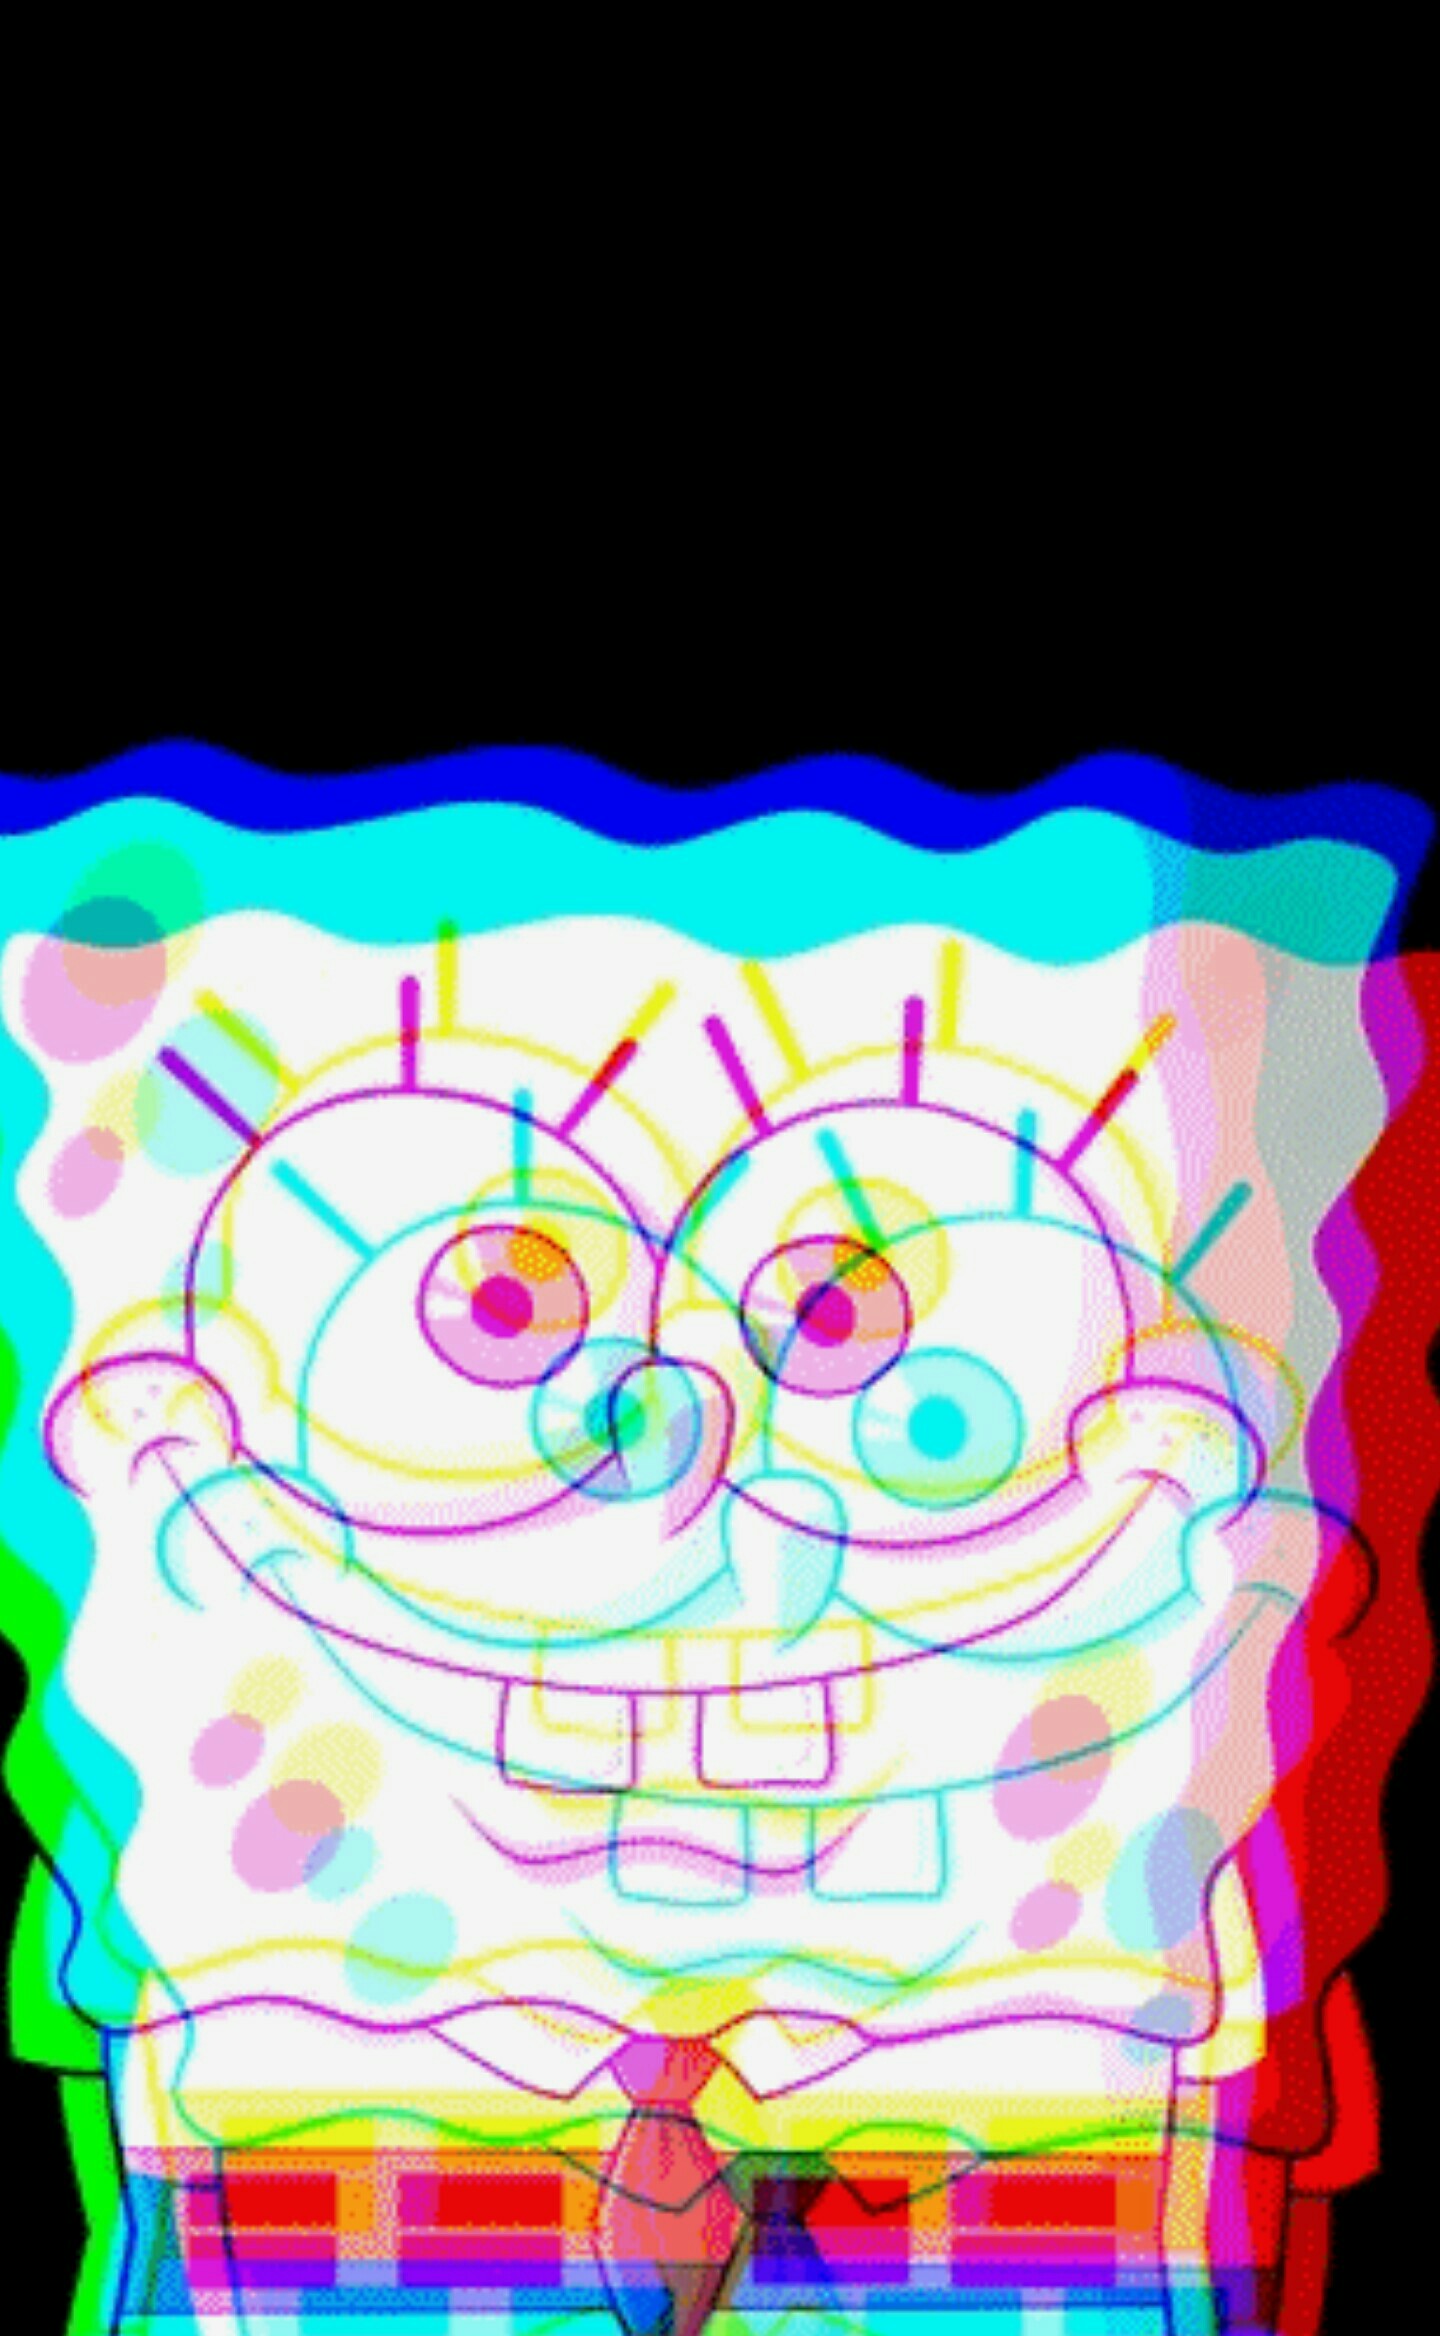            ♡Tap♡
"Wumbo" -Spongebob